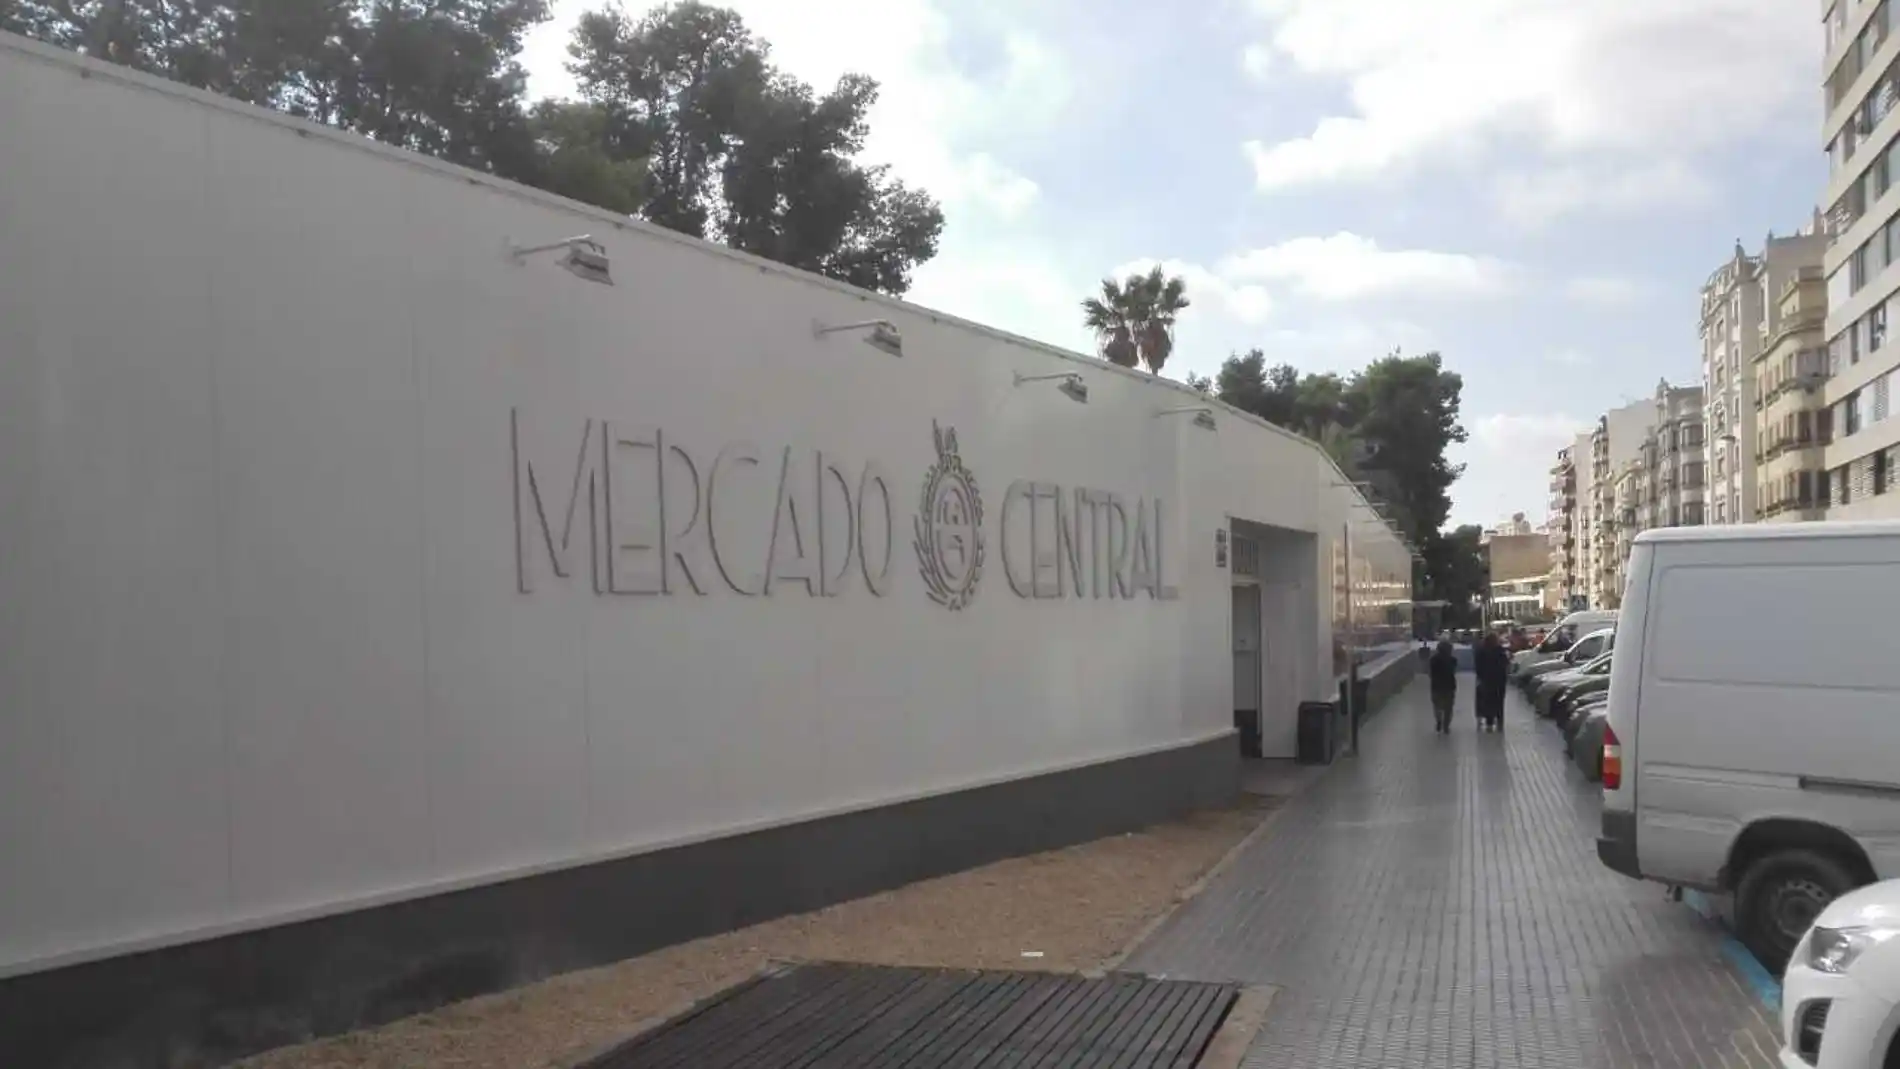 Mercado Central provisional de Elche instalado en la avenida Comunitat Valenciana